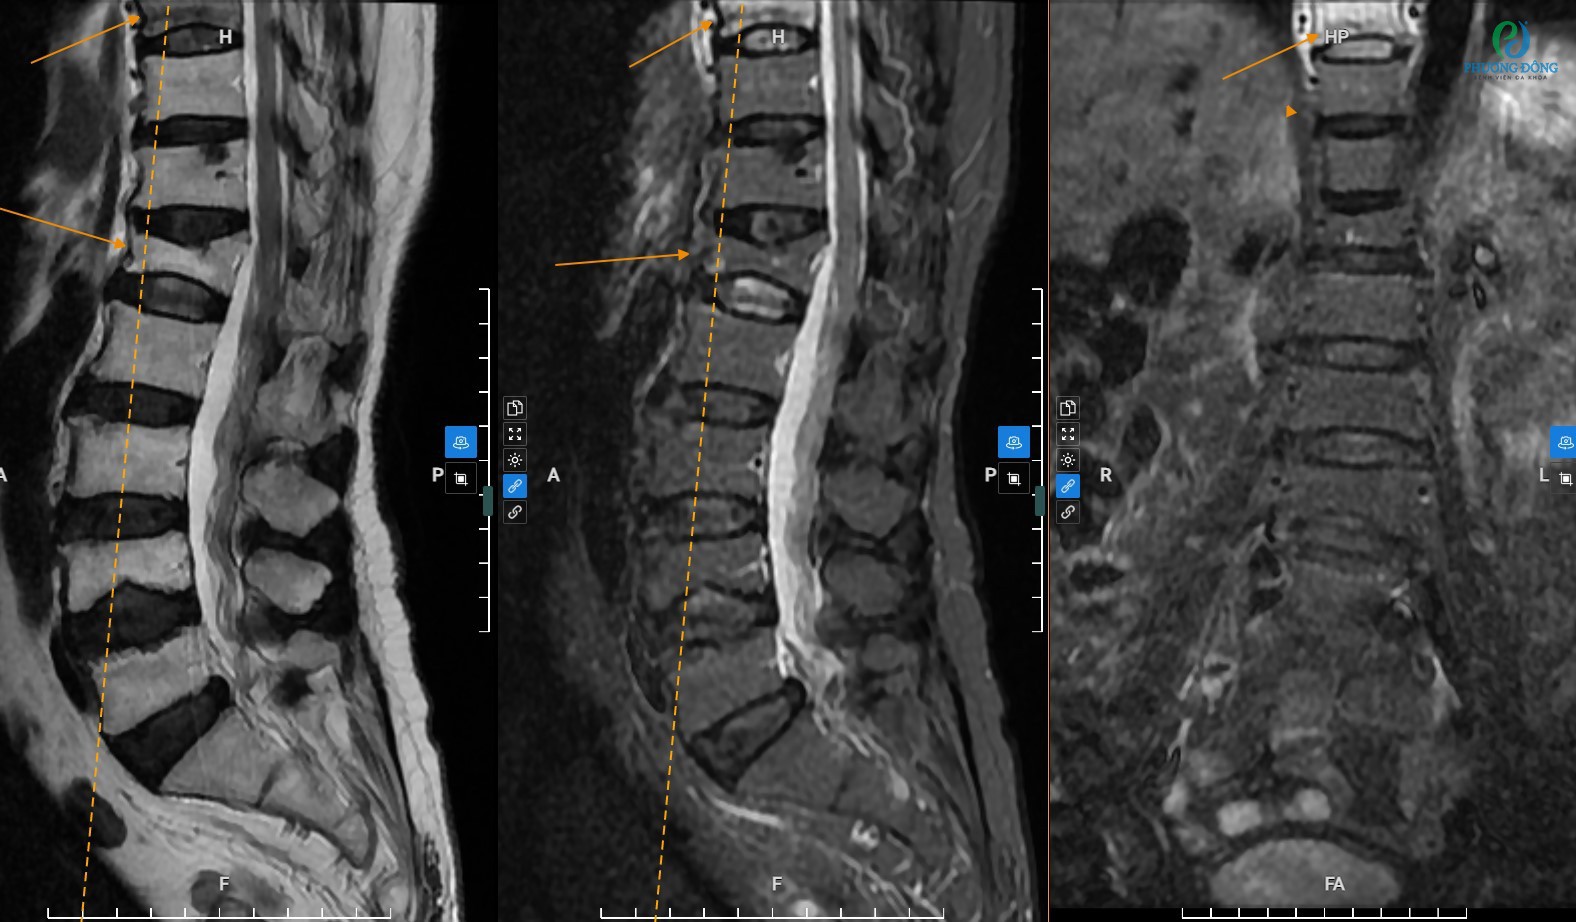 Đánh giá bệnh lý cột sống thắt lưng qua kỹ thuật chụp MRI